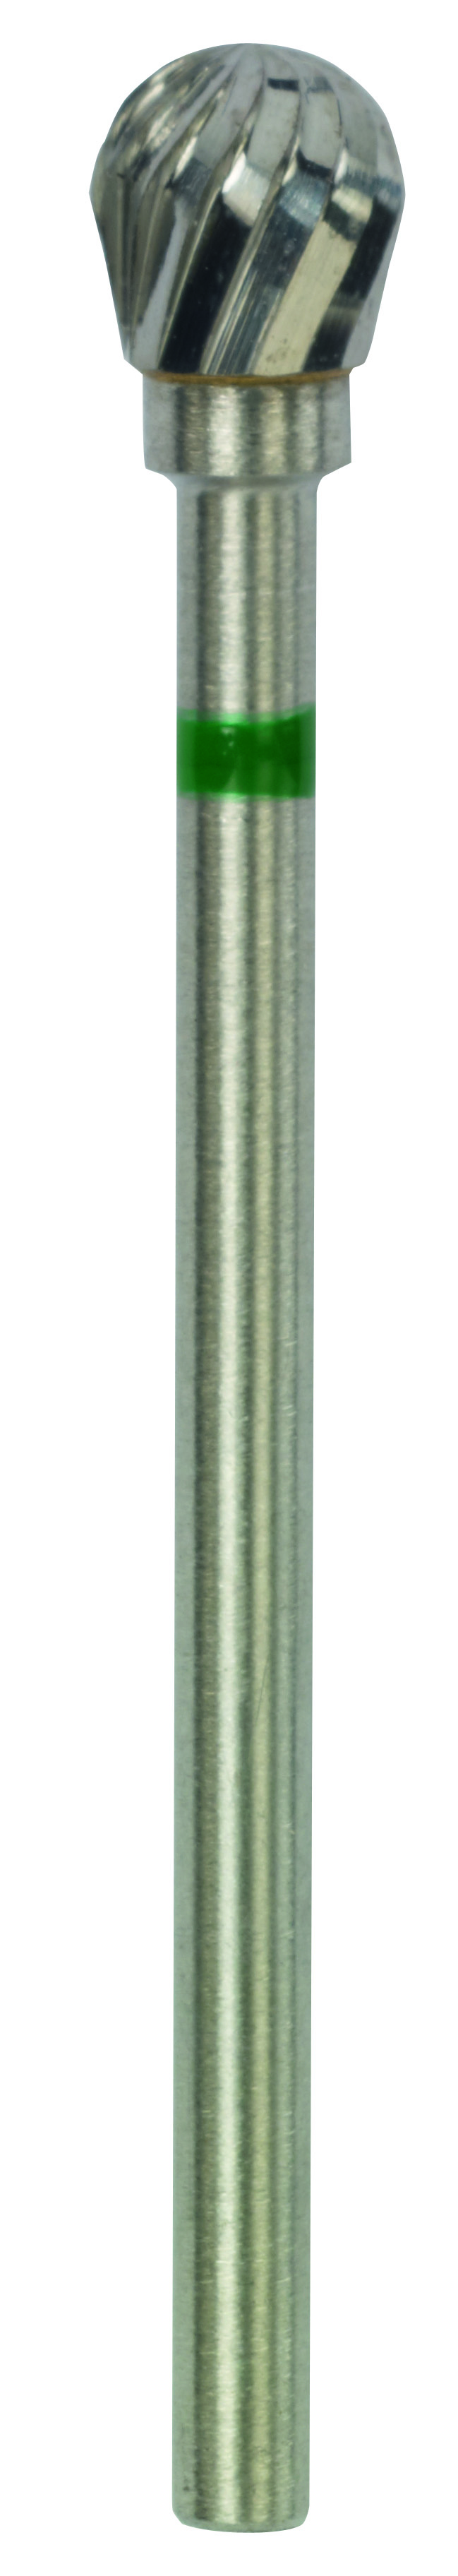 Proxxon Hartmetall-Kugelfräser 5 mm